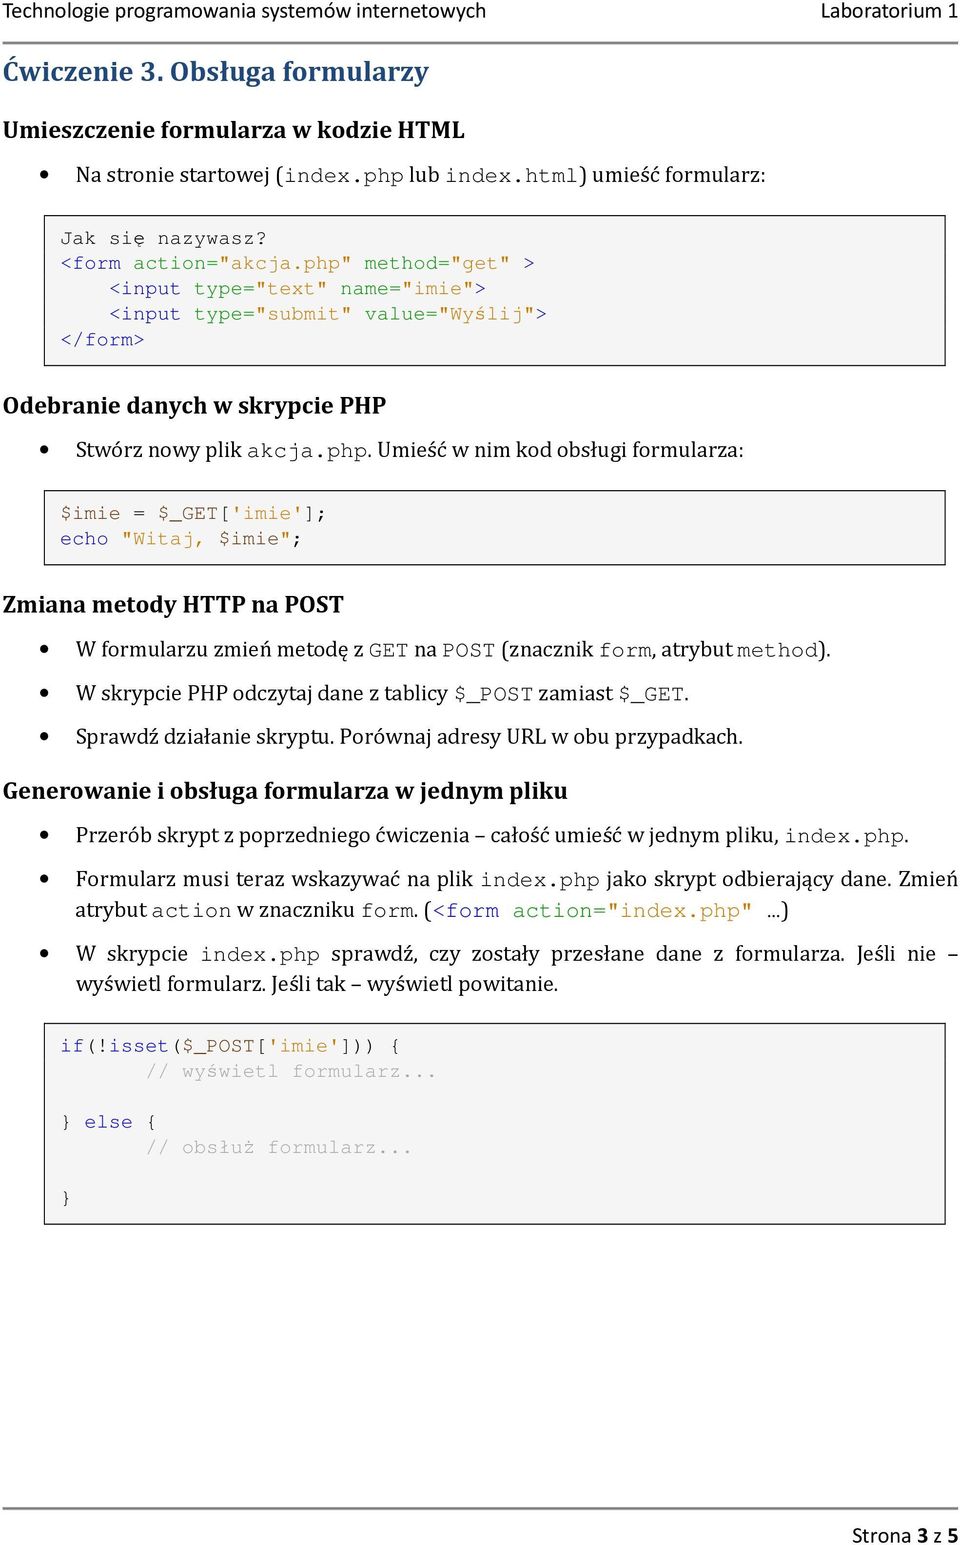 W skrypcie PHP odczytaj dane z tablicy $_POST zamiast $_GET. Sprawdź działanie skryptu. Porównaj adresy URL w obu przypadkach.